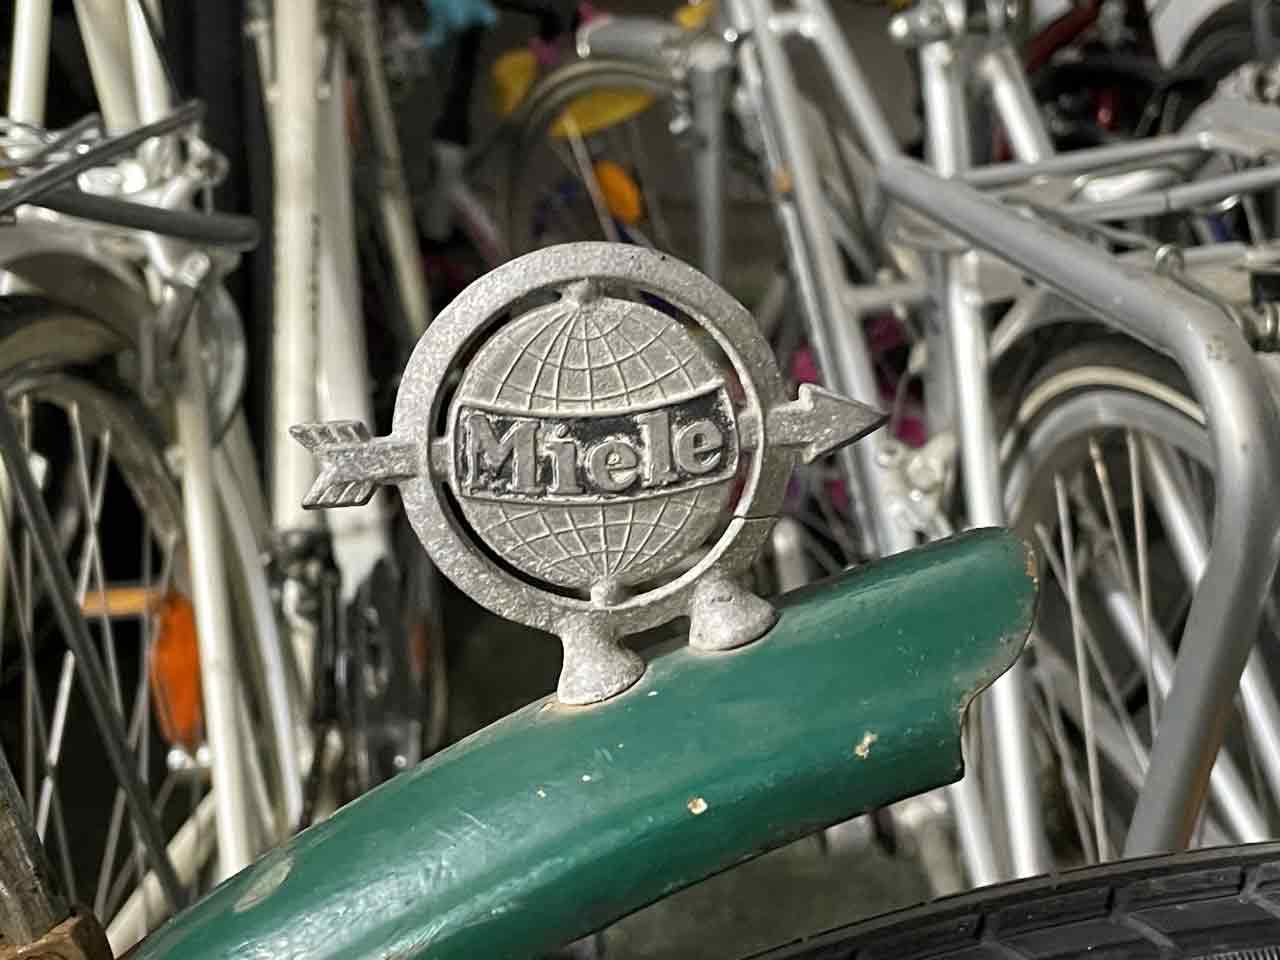 Silbernes Schild auf grünem Fahrrad-Schutzblech.